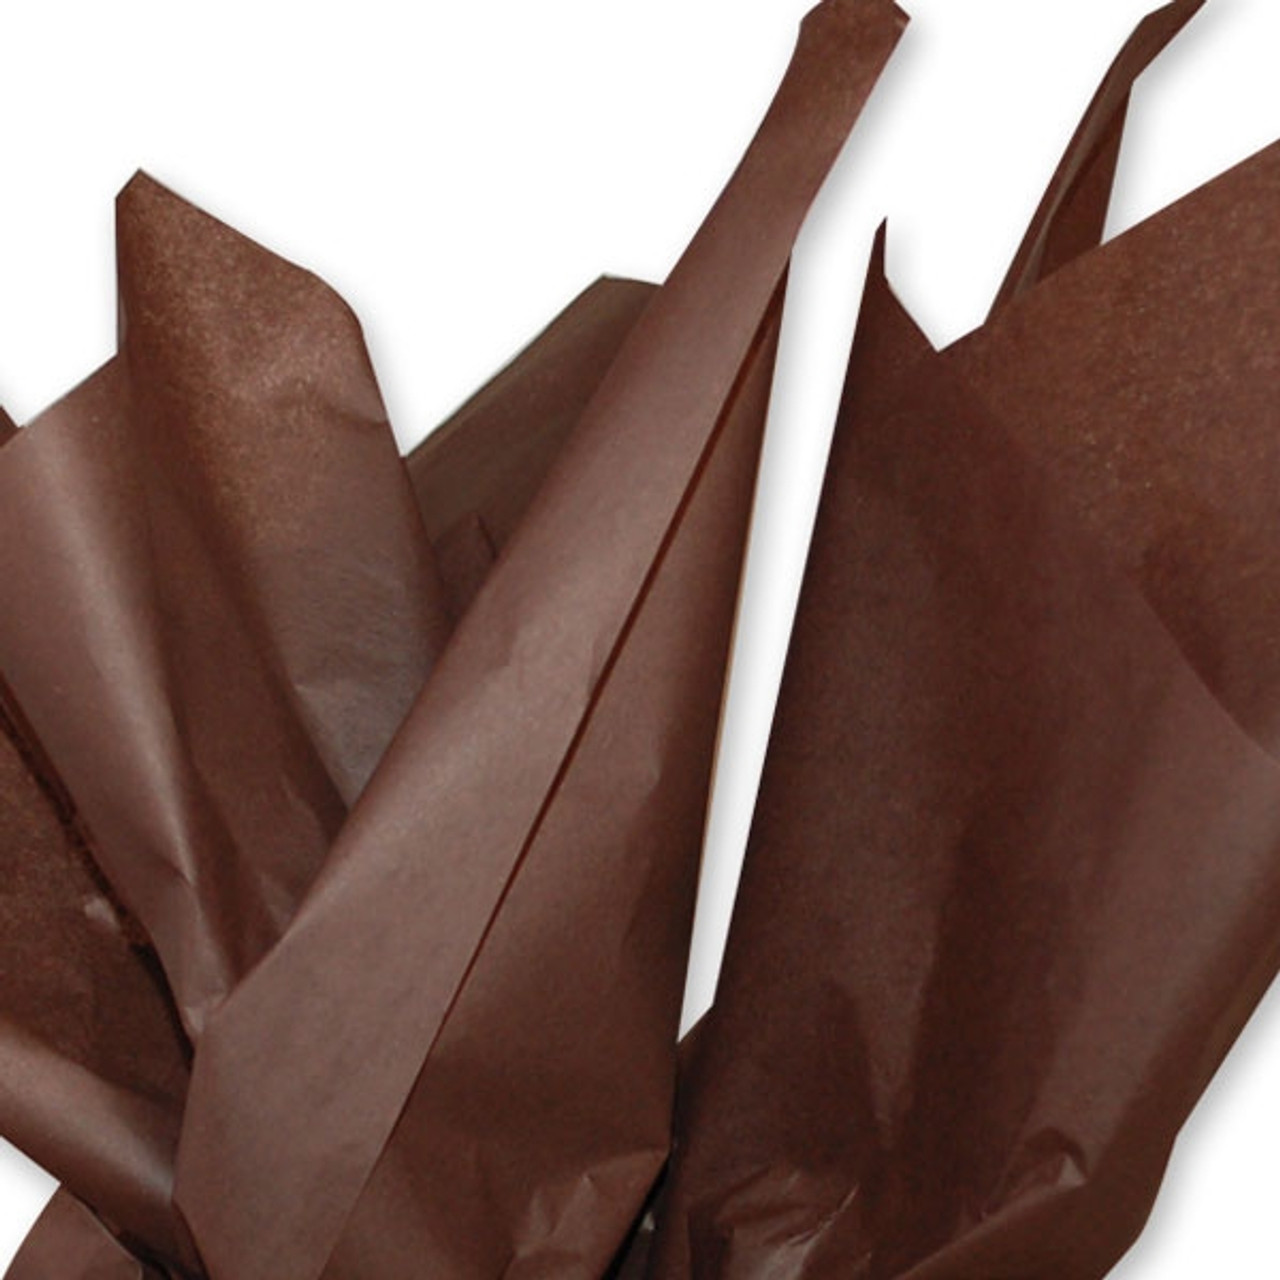 Colored Tissue Paper - Espresso Brown - 480 Sheets per Ream